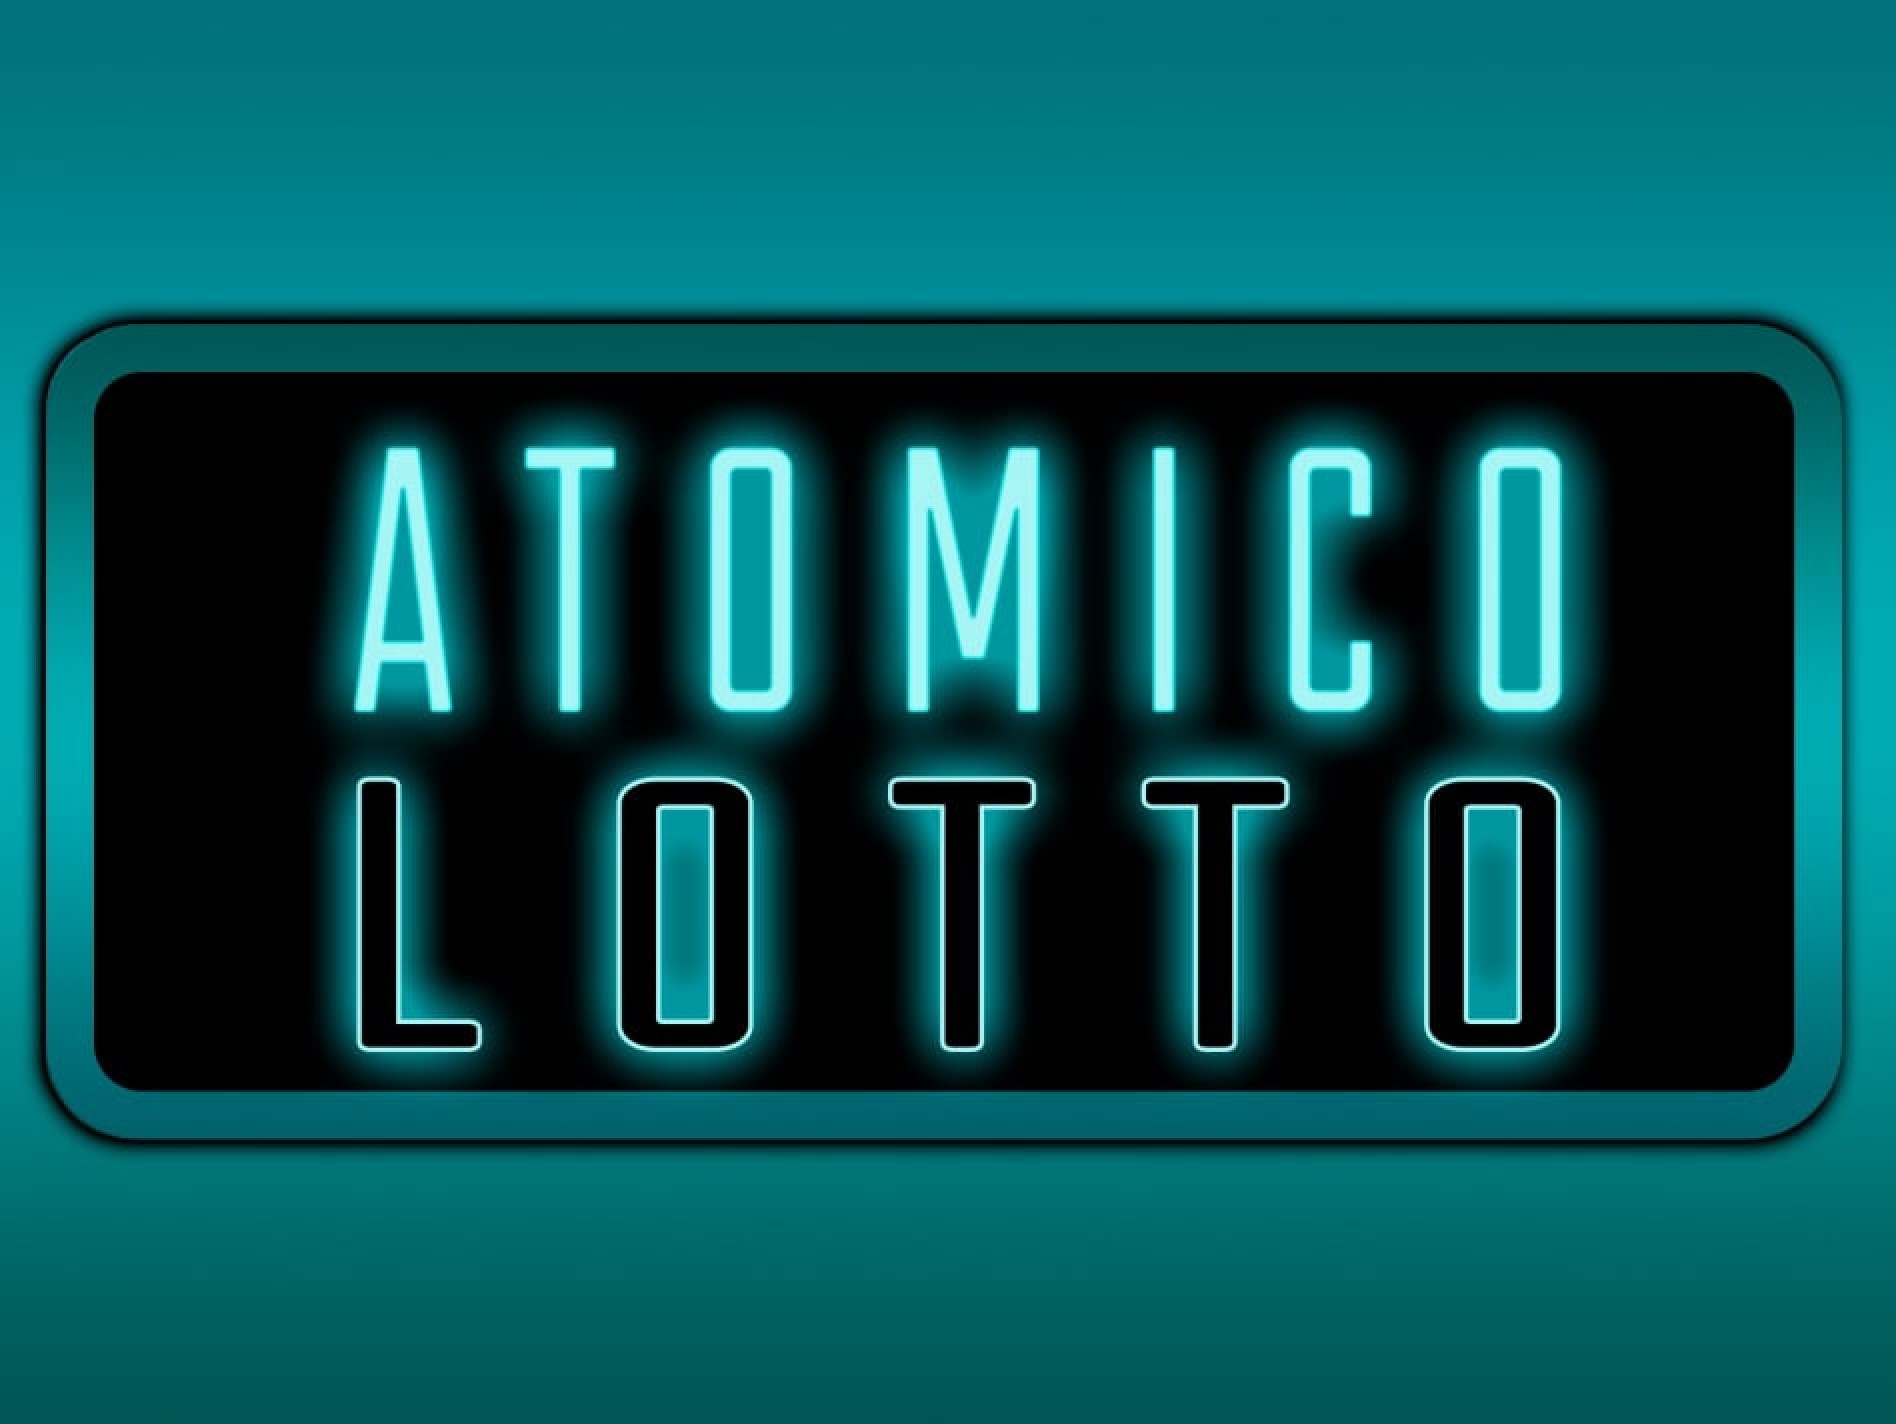 Atomico Lotto demo